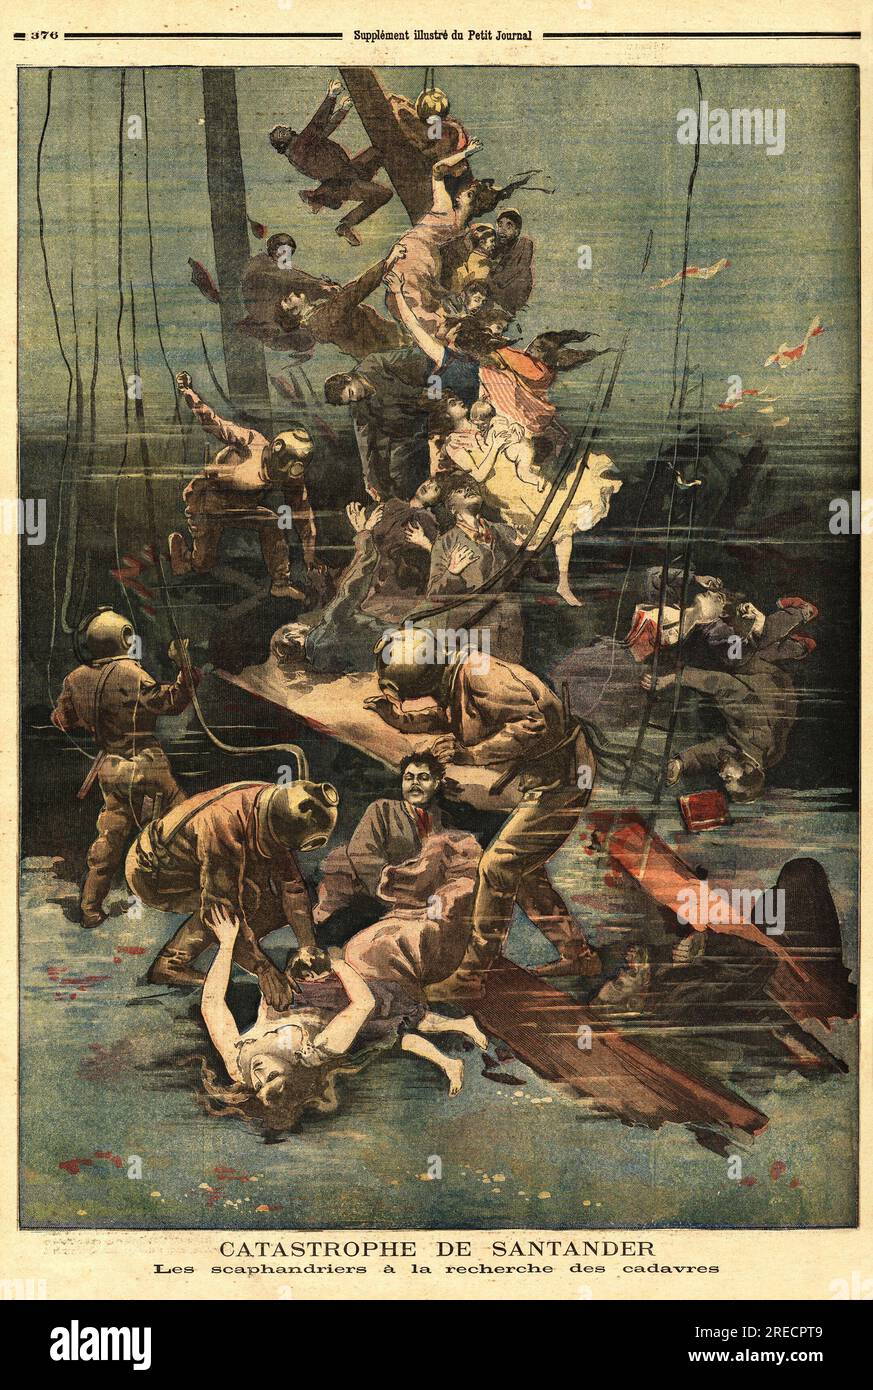 Les scaphandriers a la recherche des cadavres des navires cabo machichaco et Alphonse III, qui ont explose dans le Port de Santander (Espagne). Gravure in "Le Petit Journal" 1893. Stockfoto